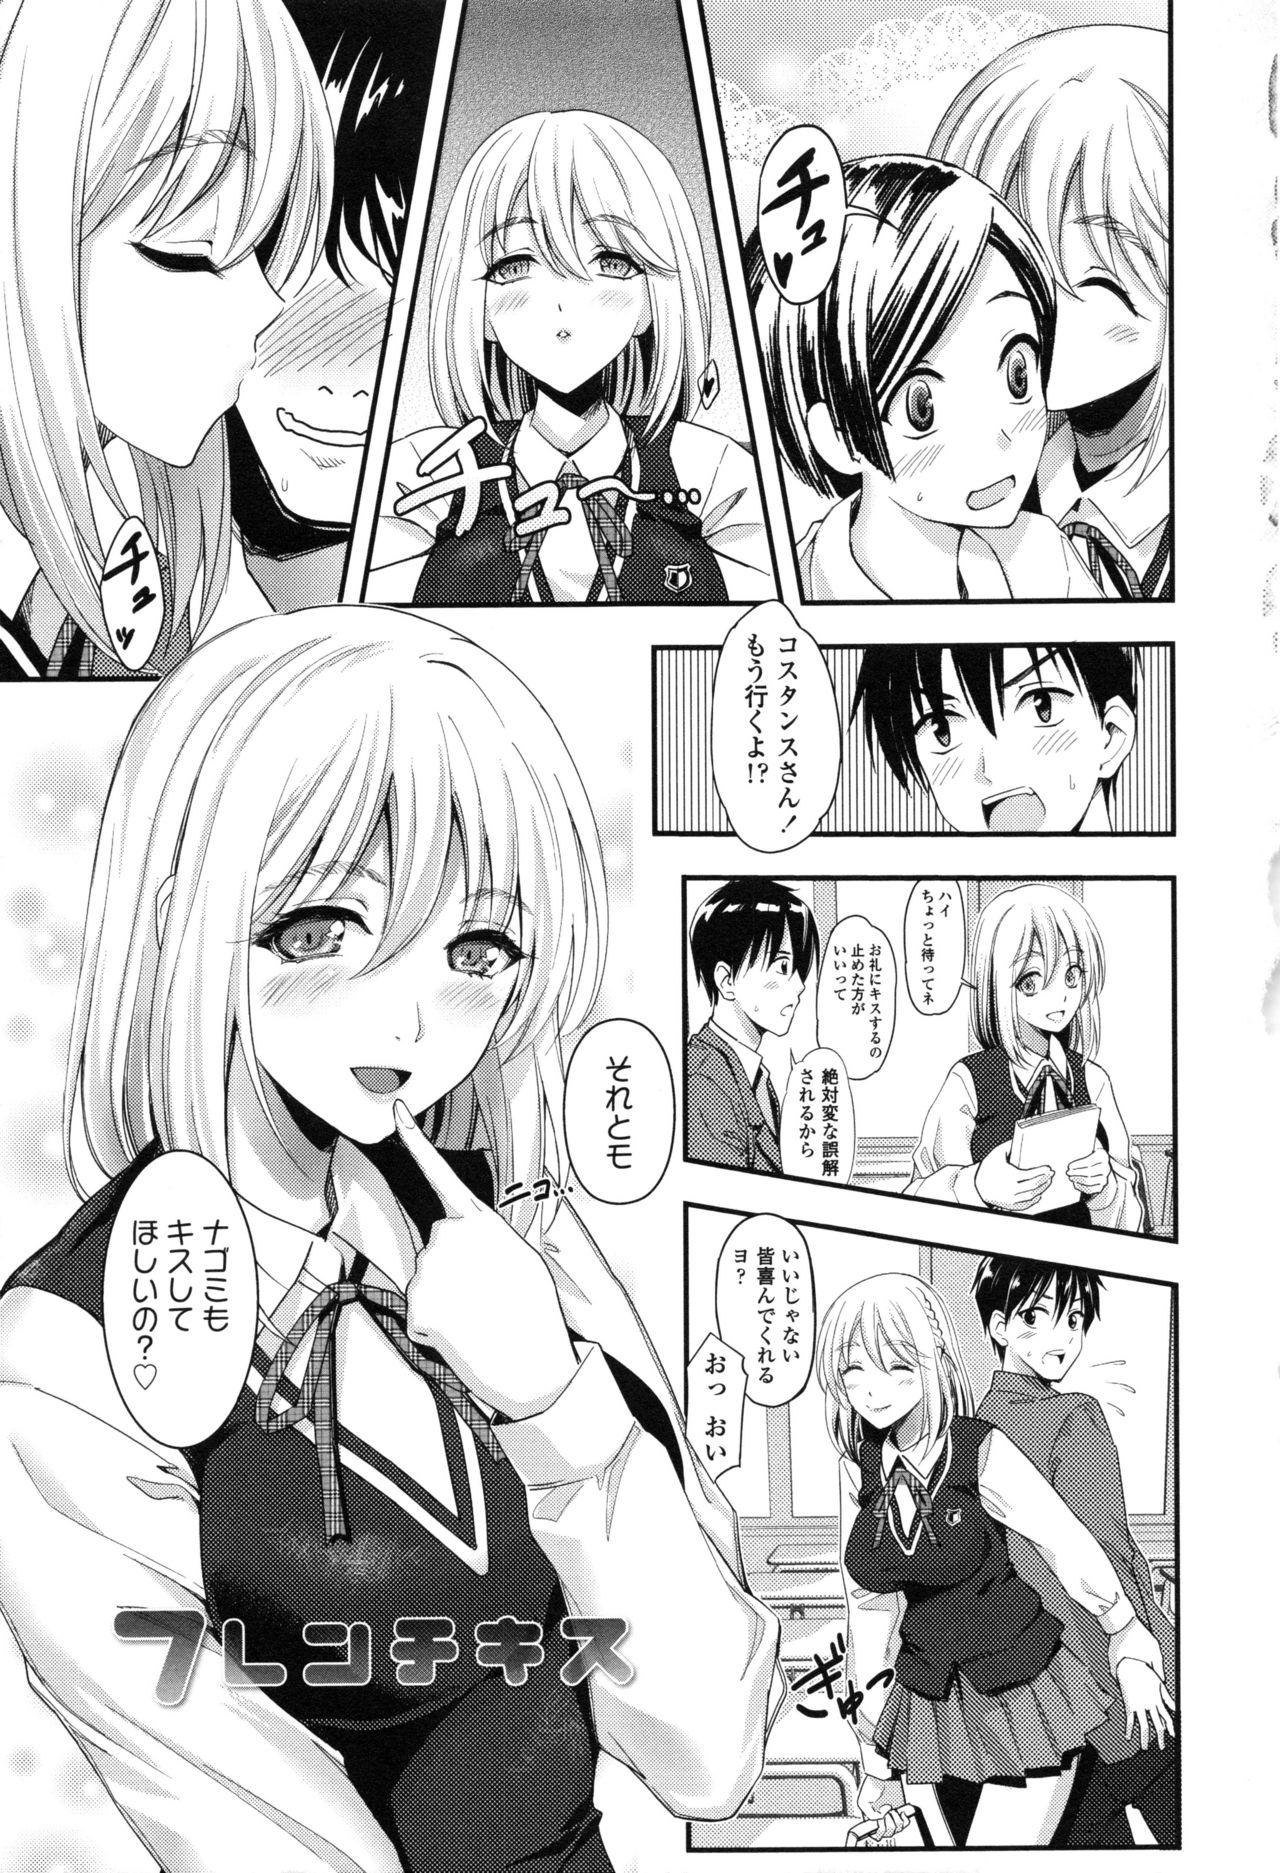 Seifuku no Mama Aishinasai! - Love in school uniform 128